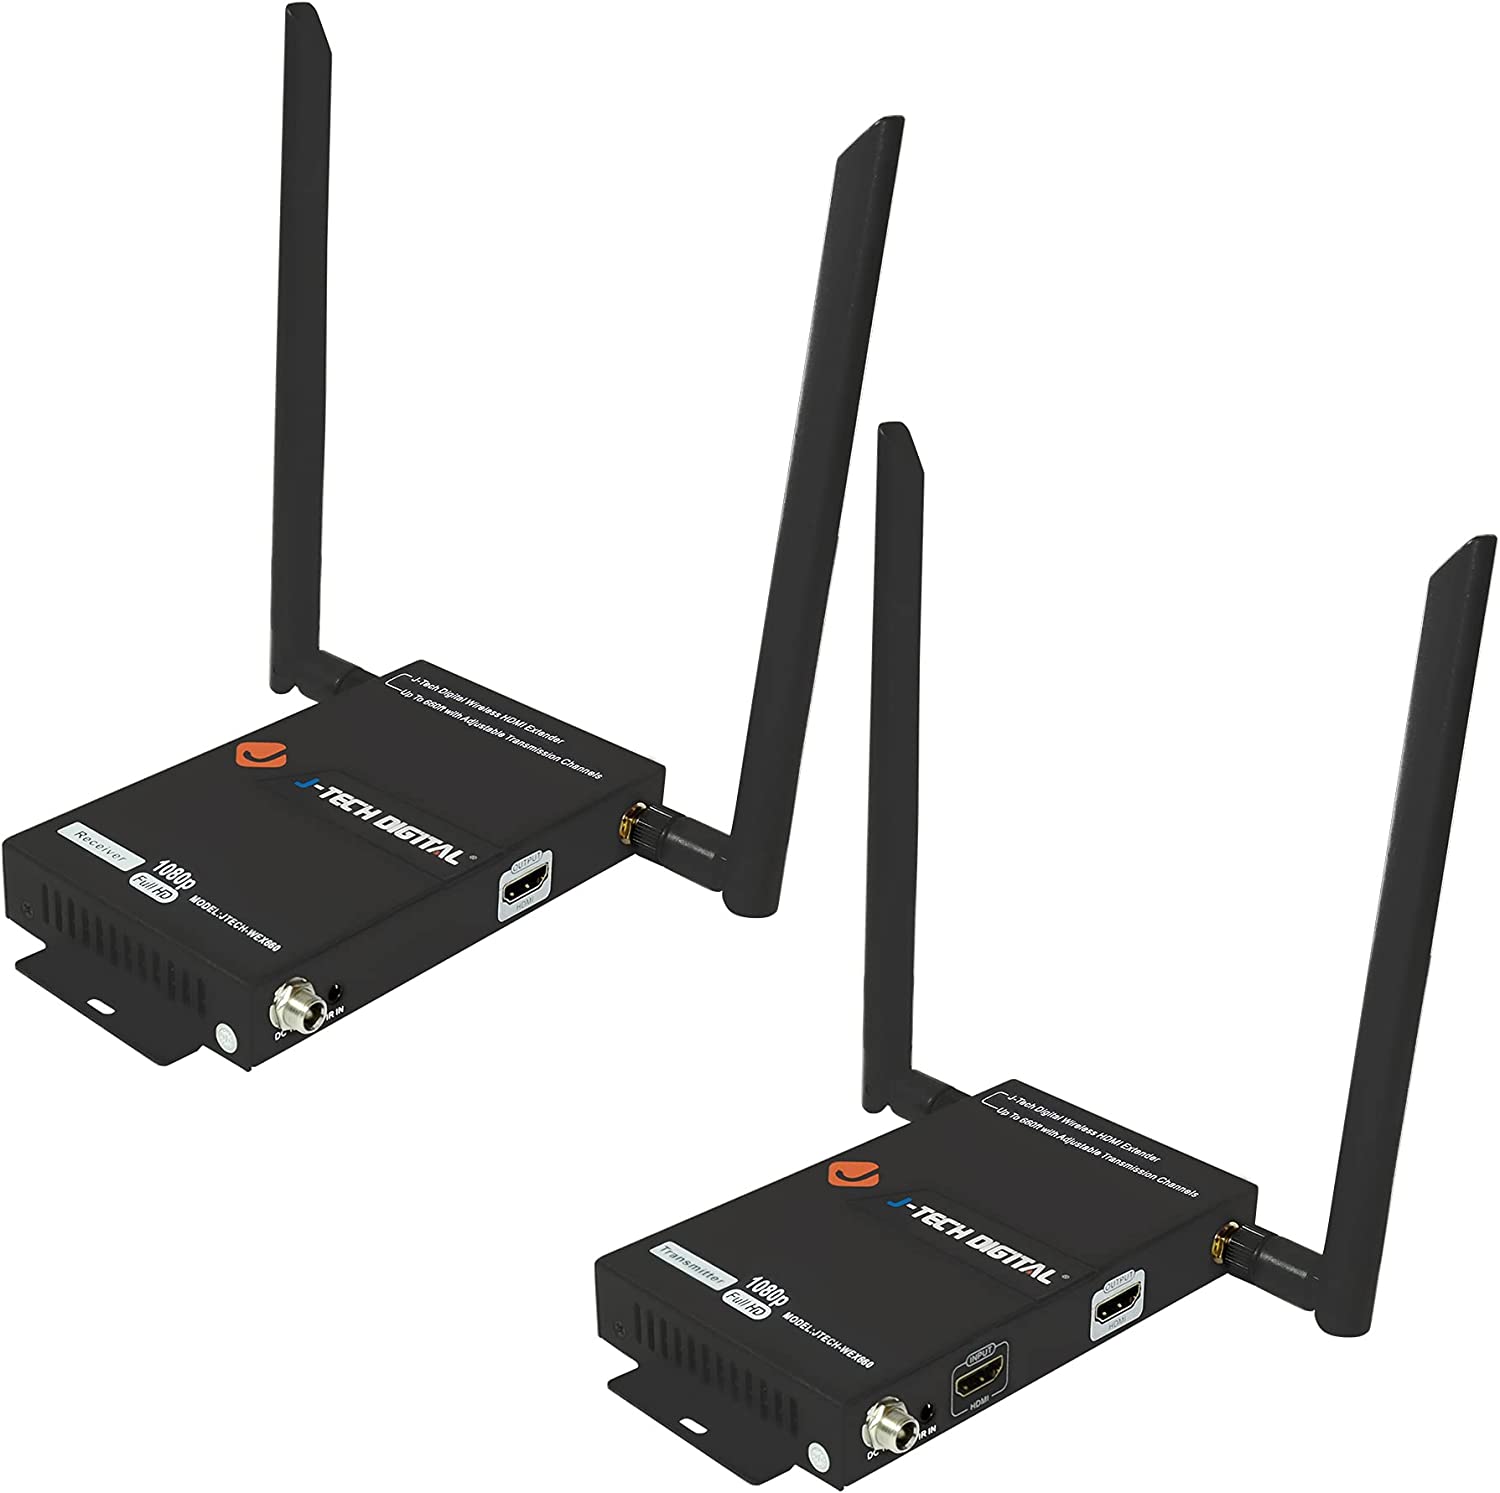  1. J-Tech Digital HDbitT Series Wireless [NEW-JTECH-WEX310] 